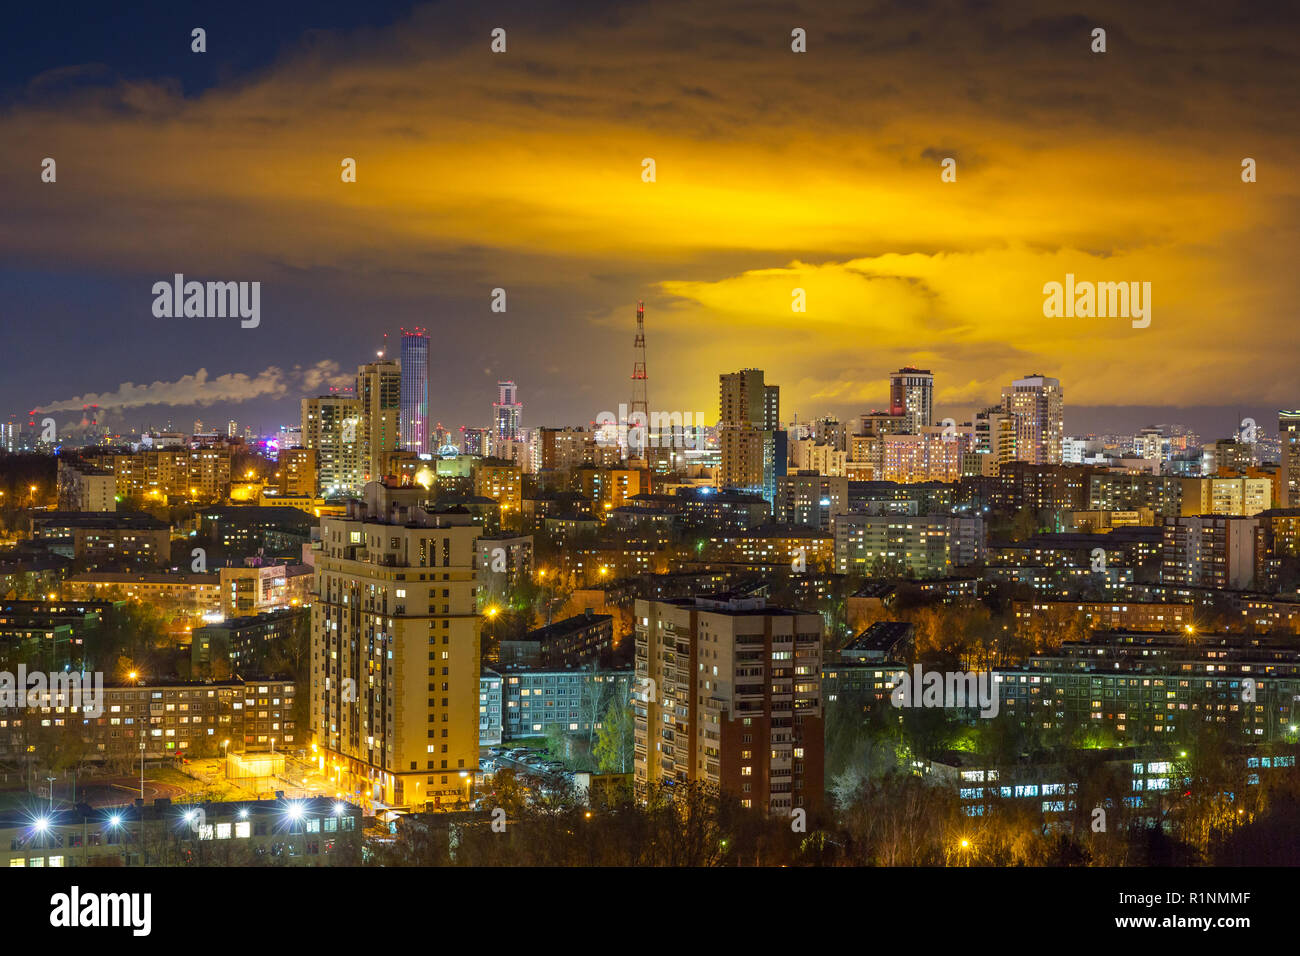 night scene of Yekaterinburg, Russia Stock Photo